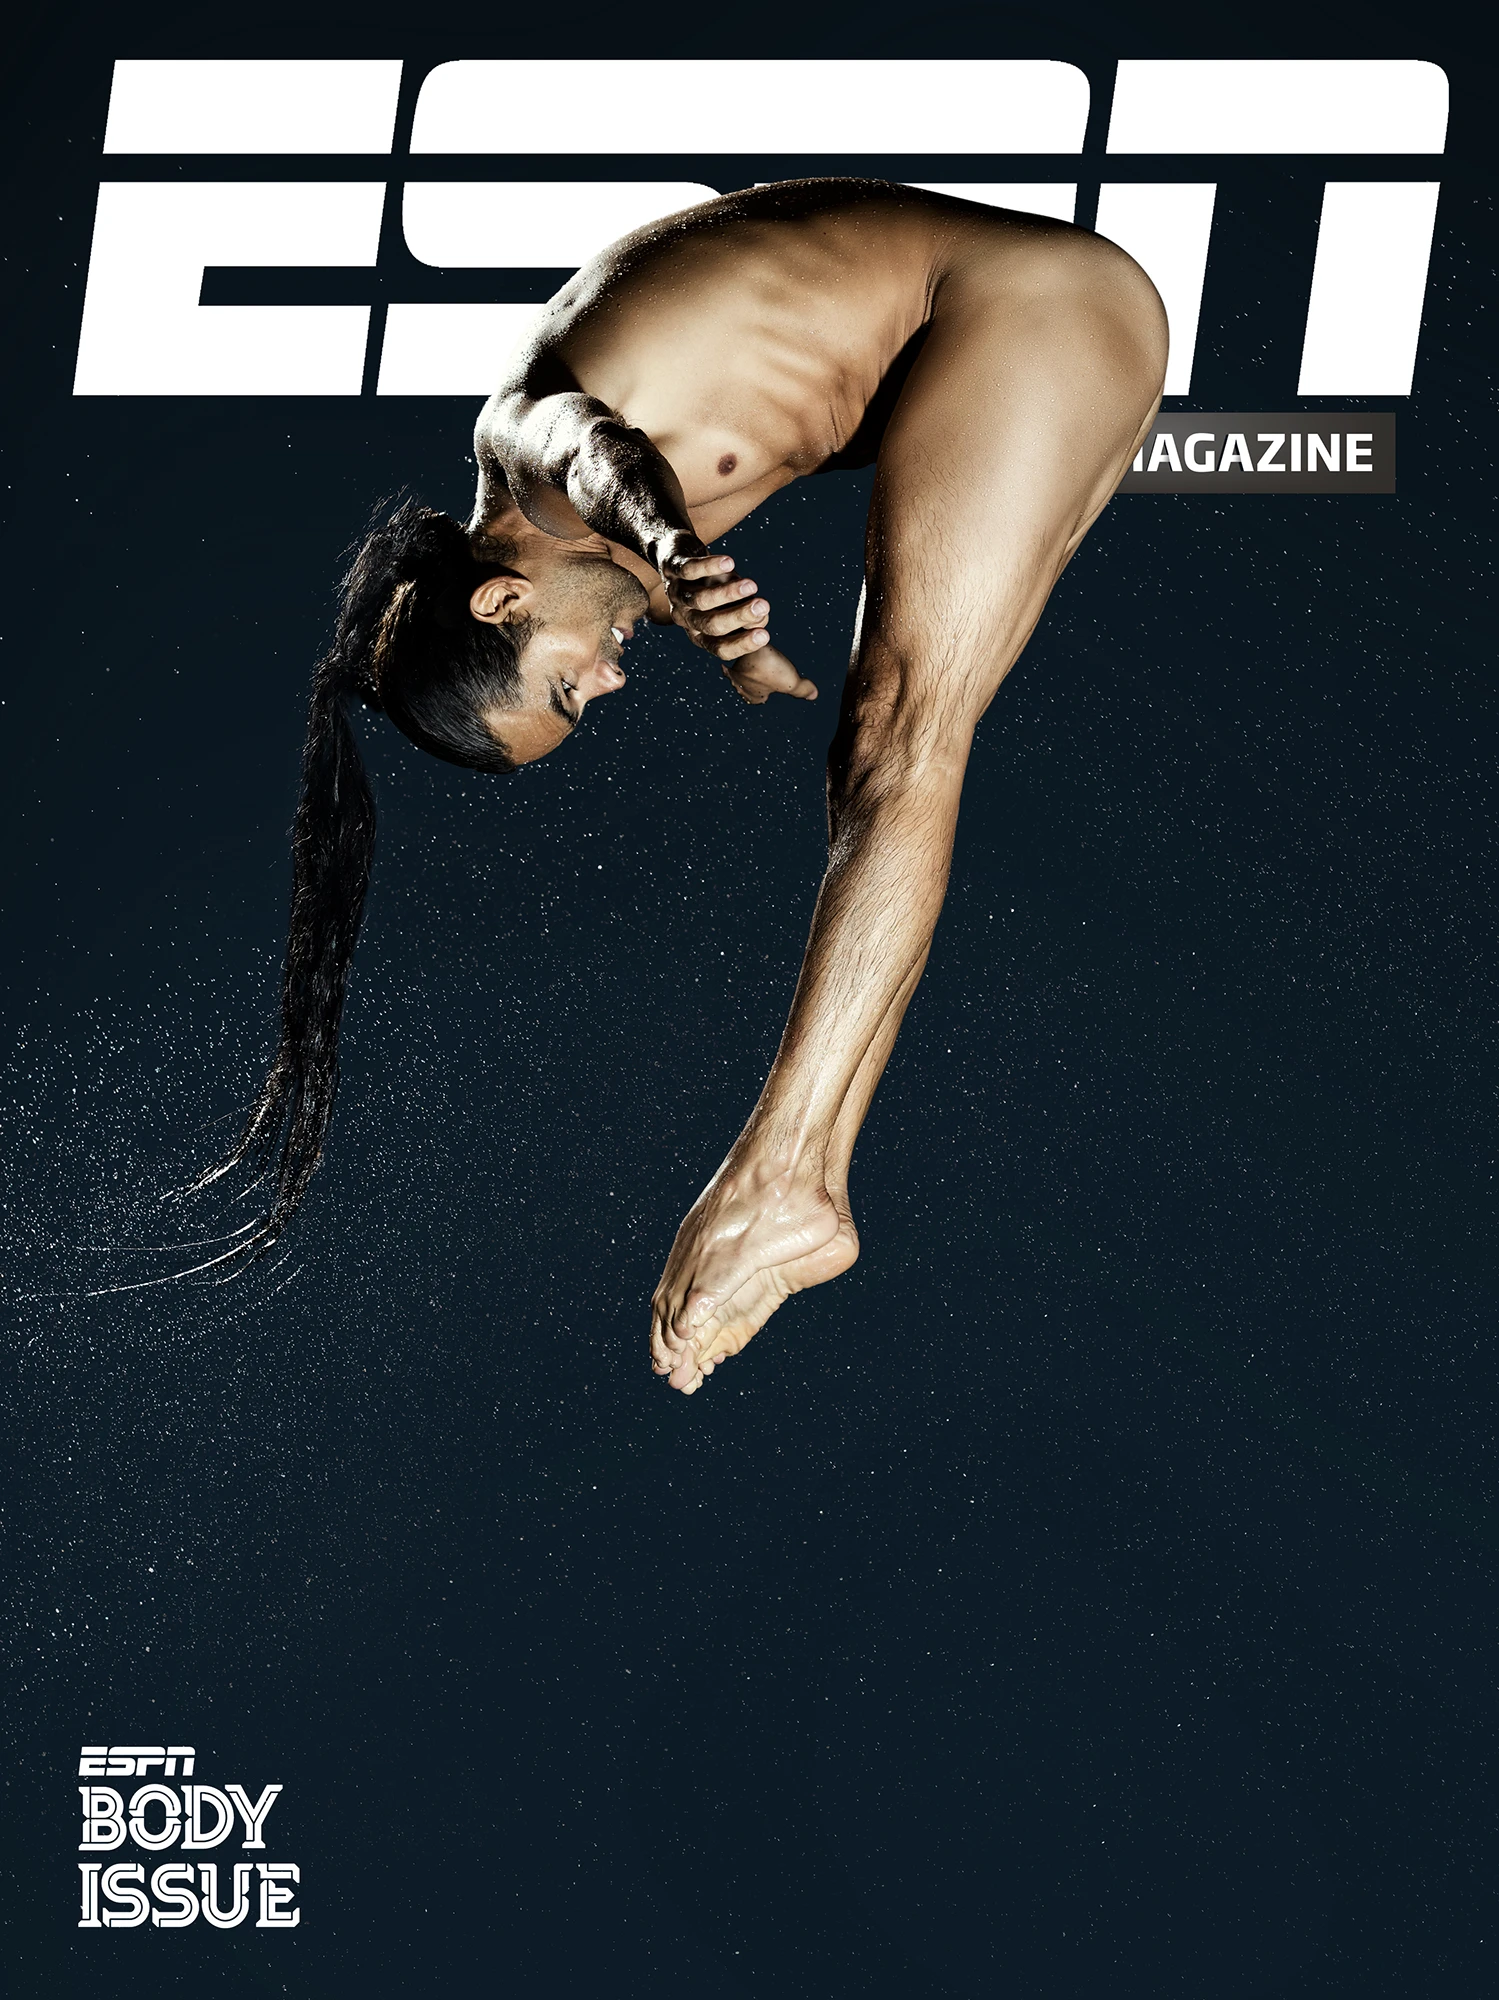 Deportista Colombiano, Clavadista Orlando Duque posando desnudo para la revista digital Body Issue de ESPN